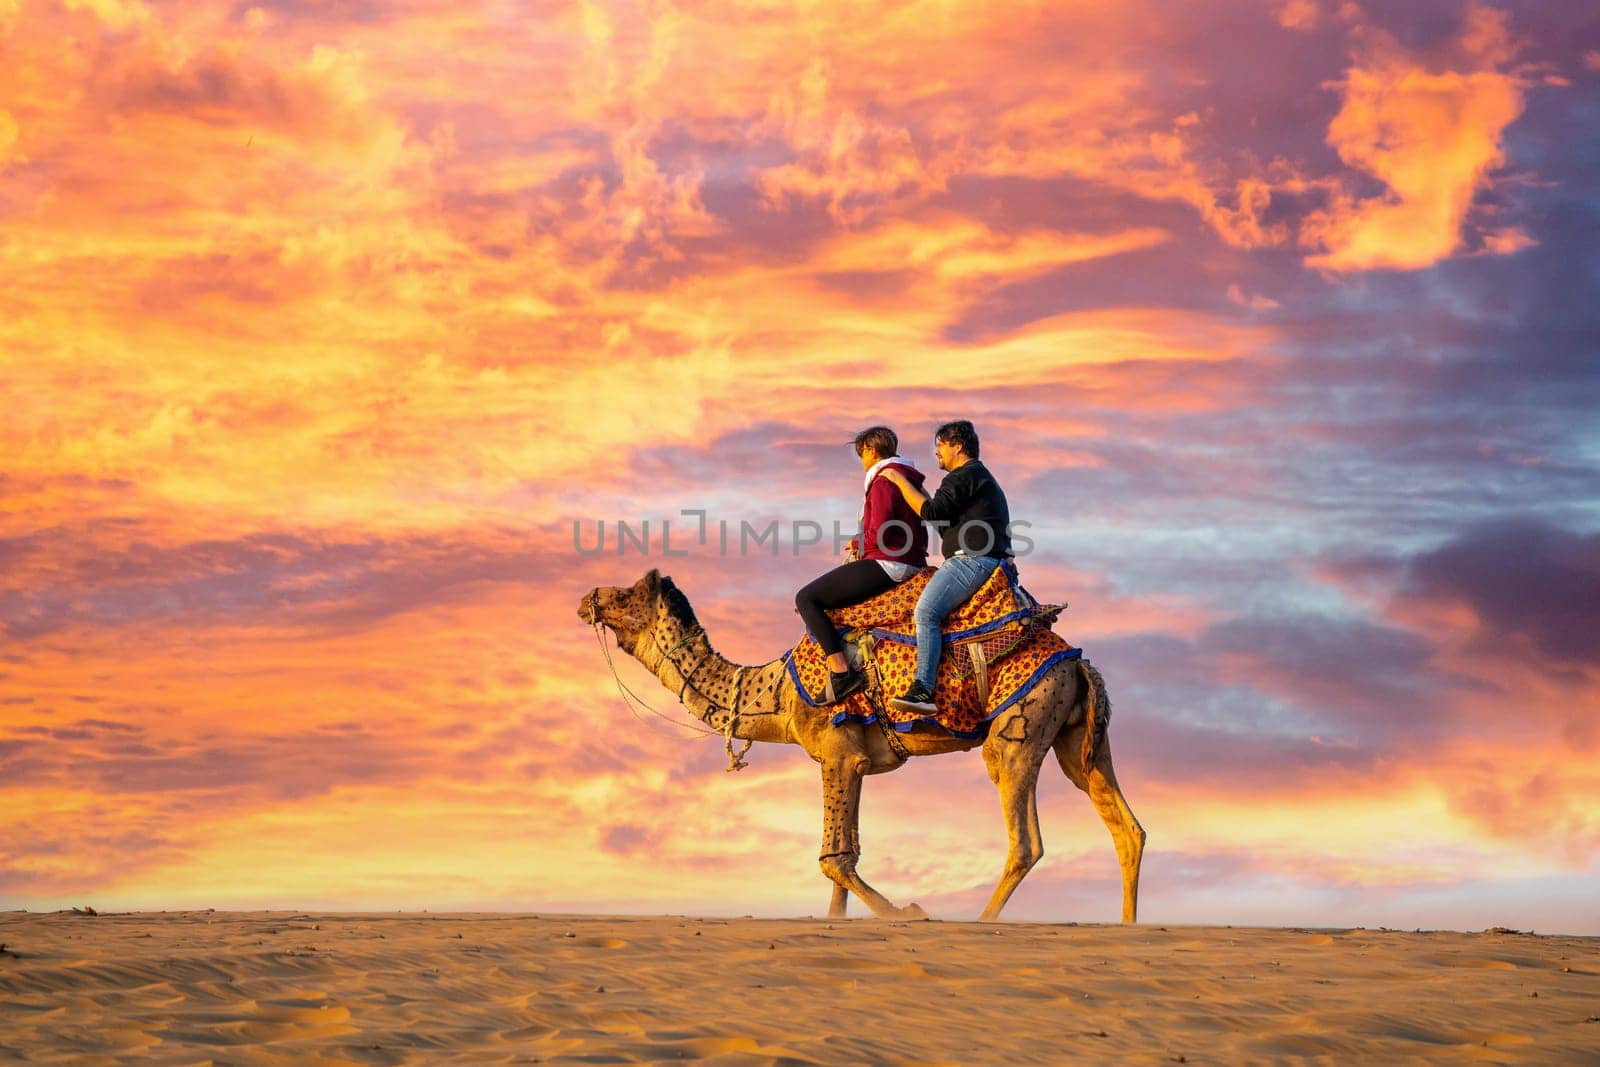 Young couple tourists sitting on camel enjoying the walk sand dunes in sam or dubai by Shalinimathur